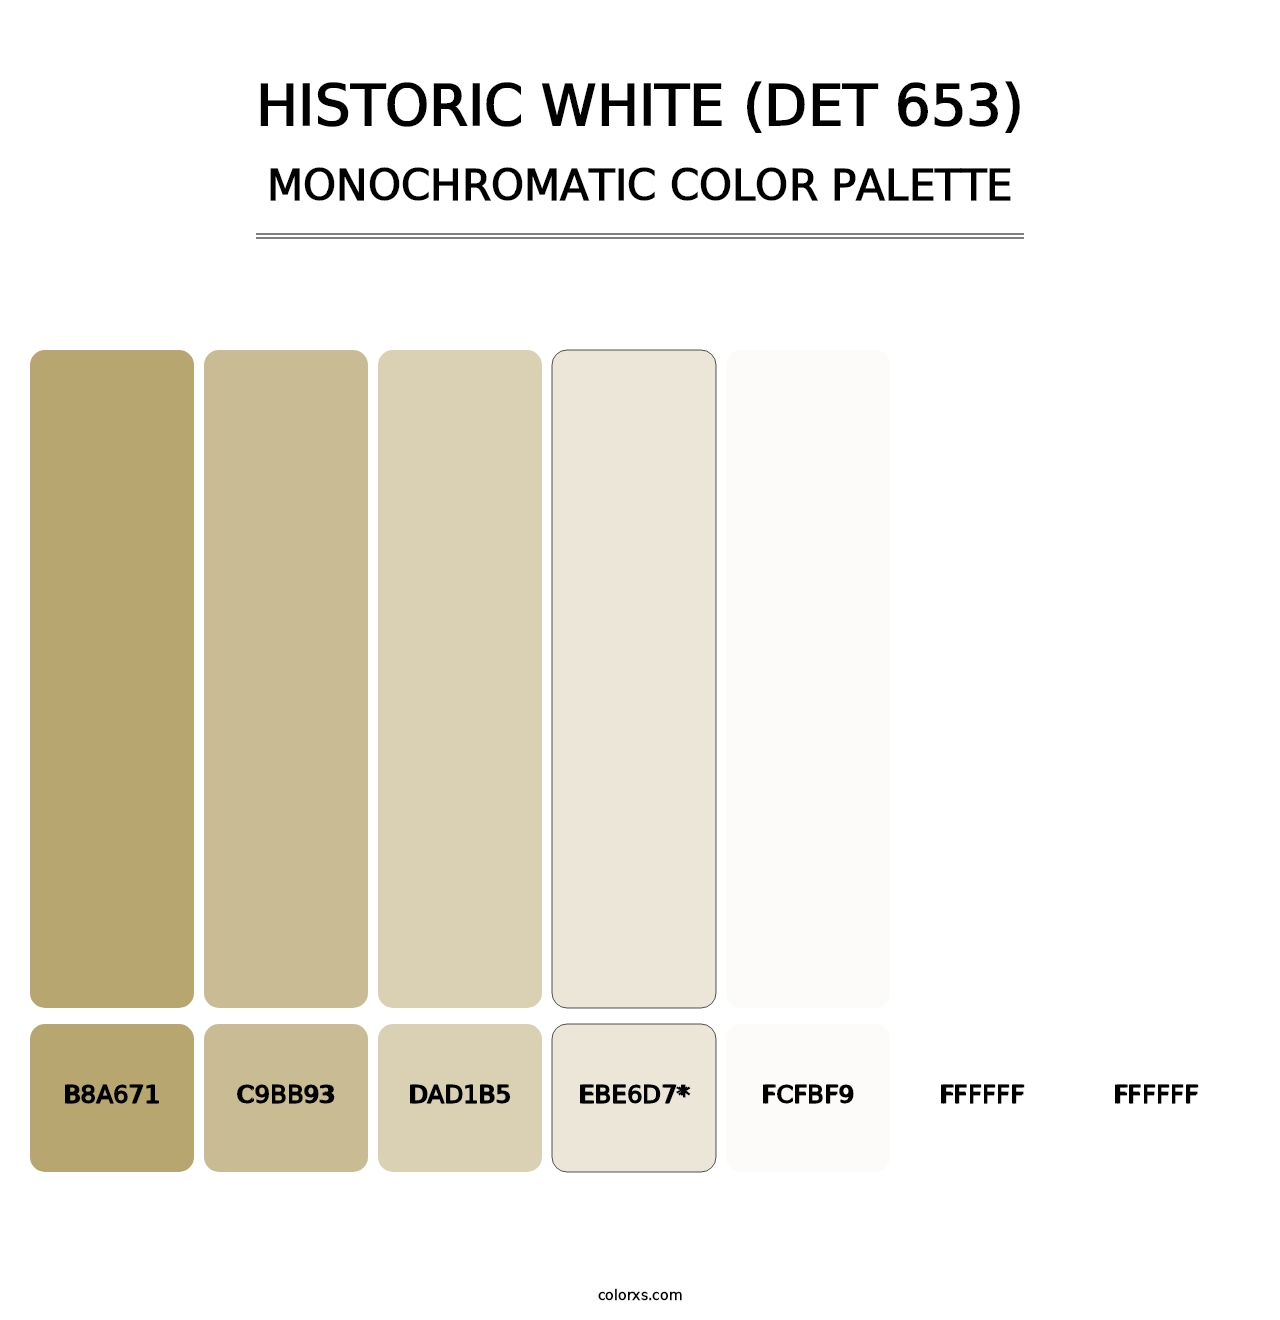 Historic White (DET 653) - Monochromatic Color Palette